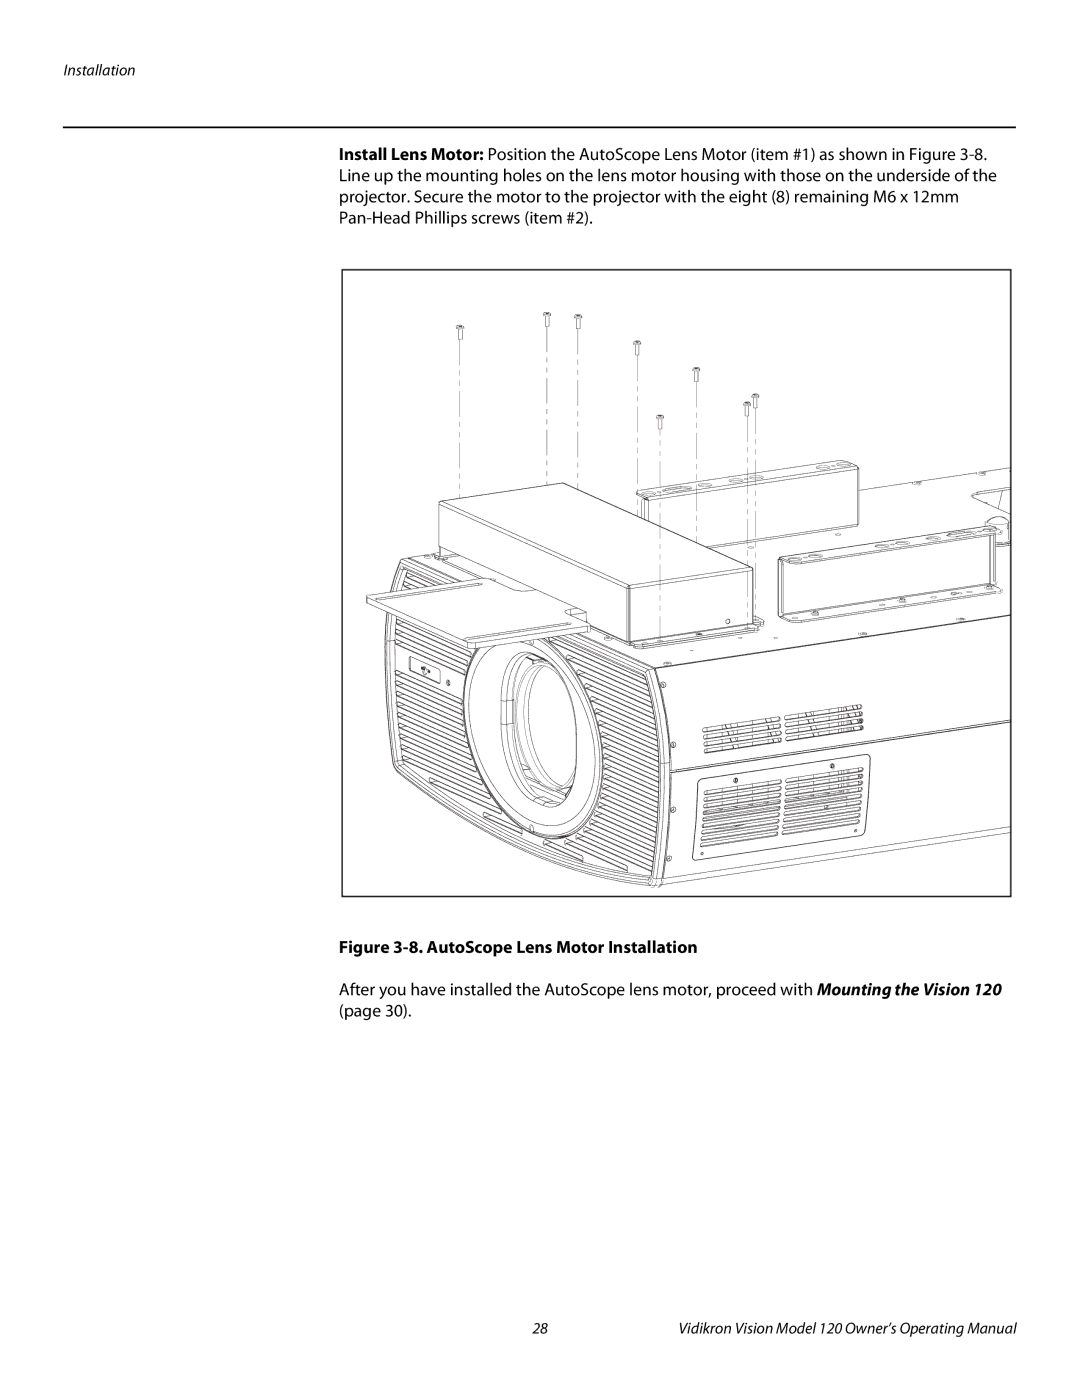 Vidikron v120 manual AutoScope Lens Motor Installation 